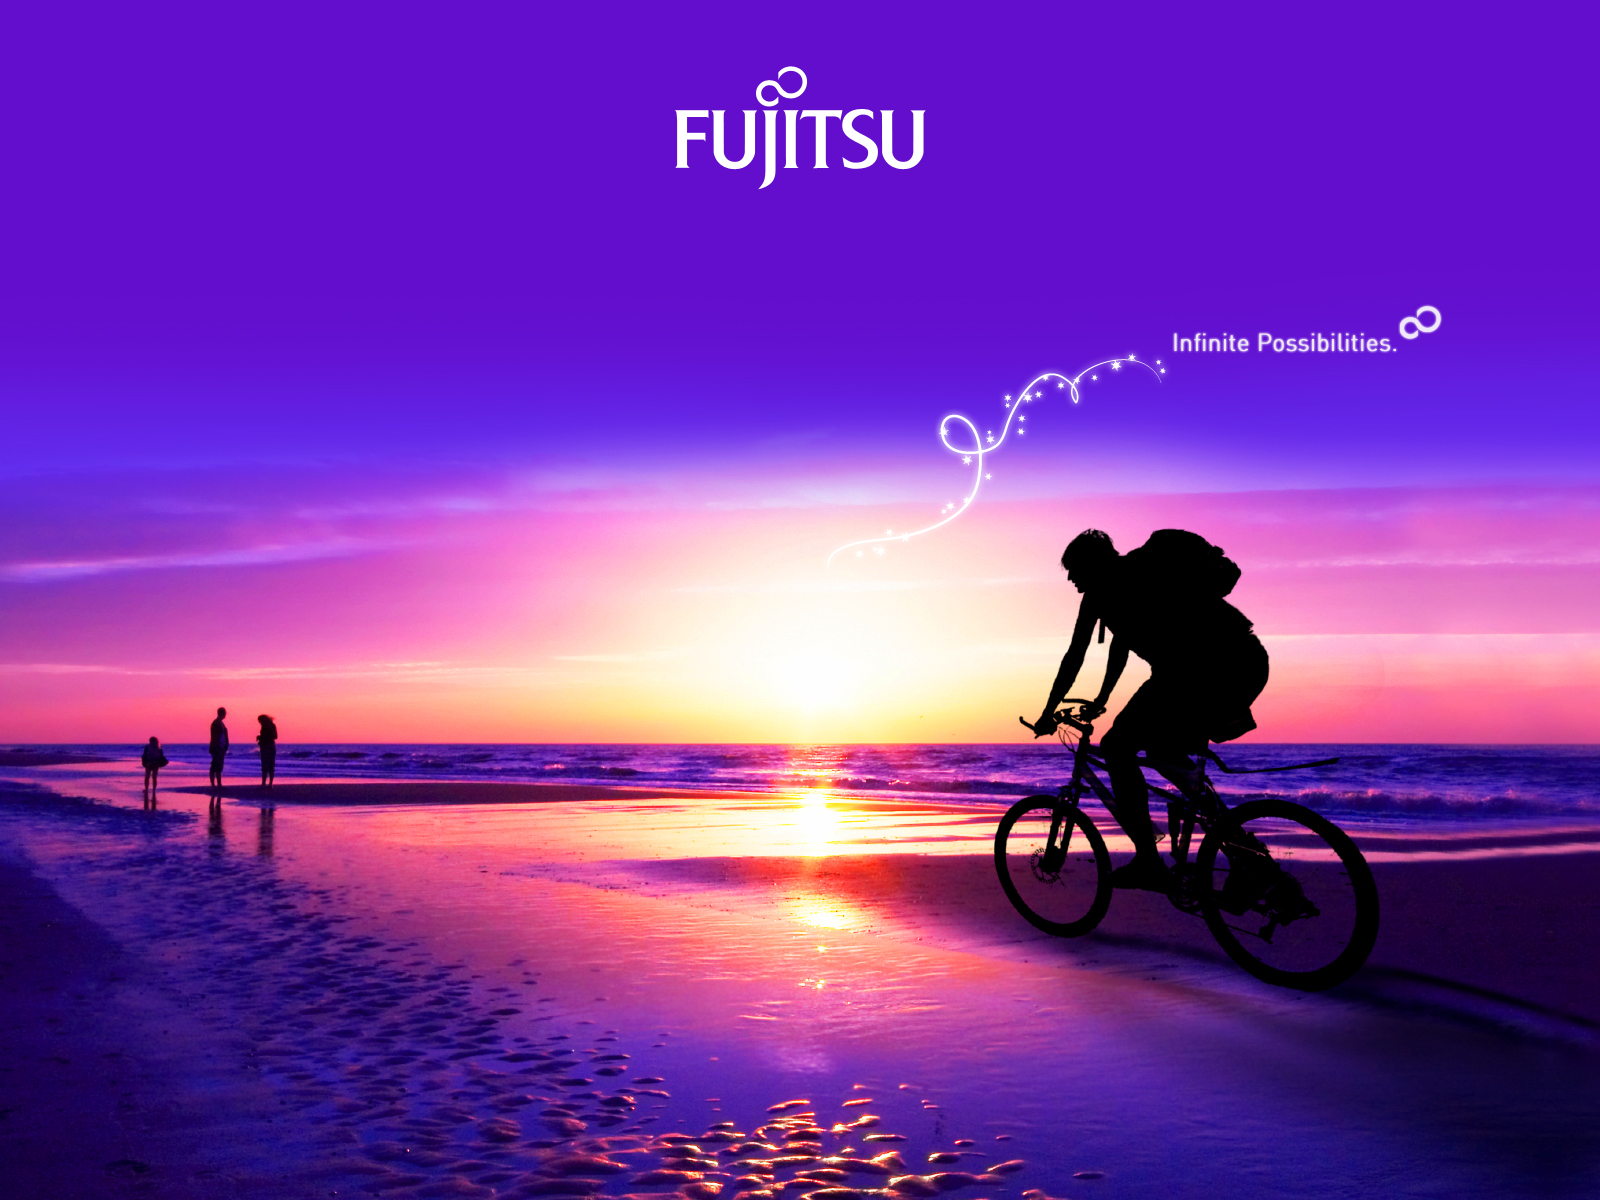 fujitsu tapete,himmel,liebe,freundschaft,morgen,horizont